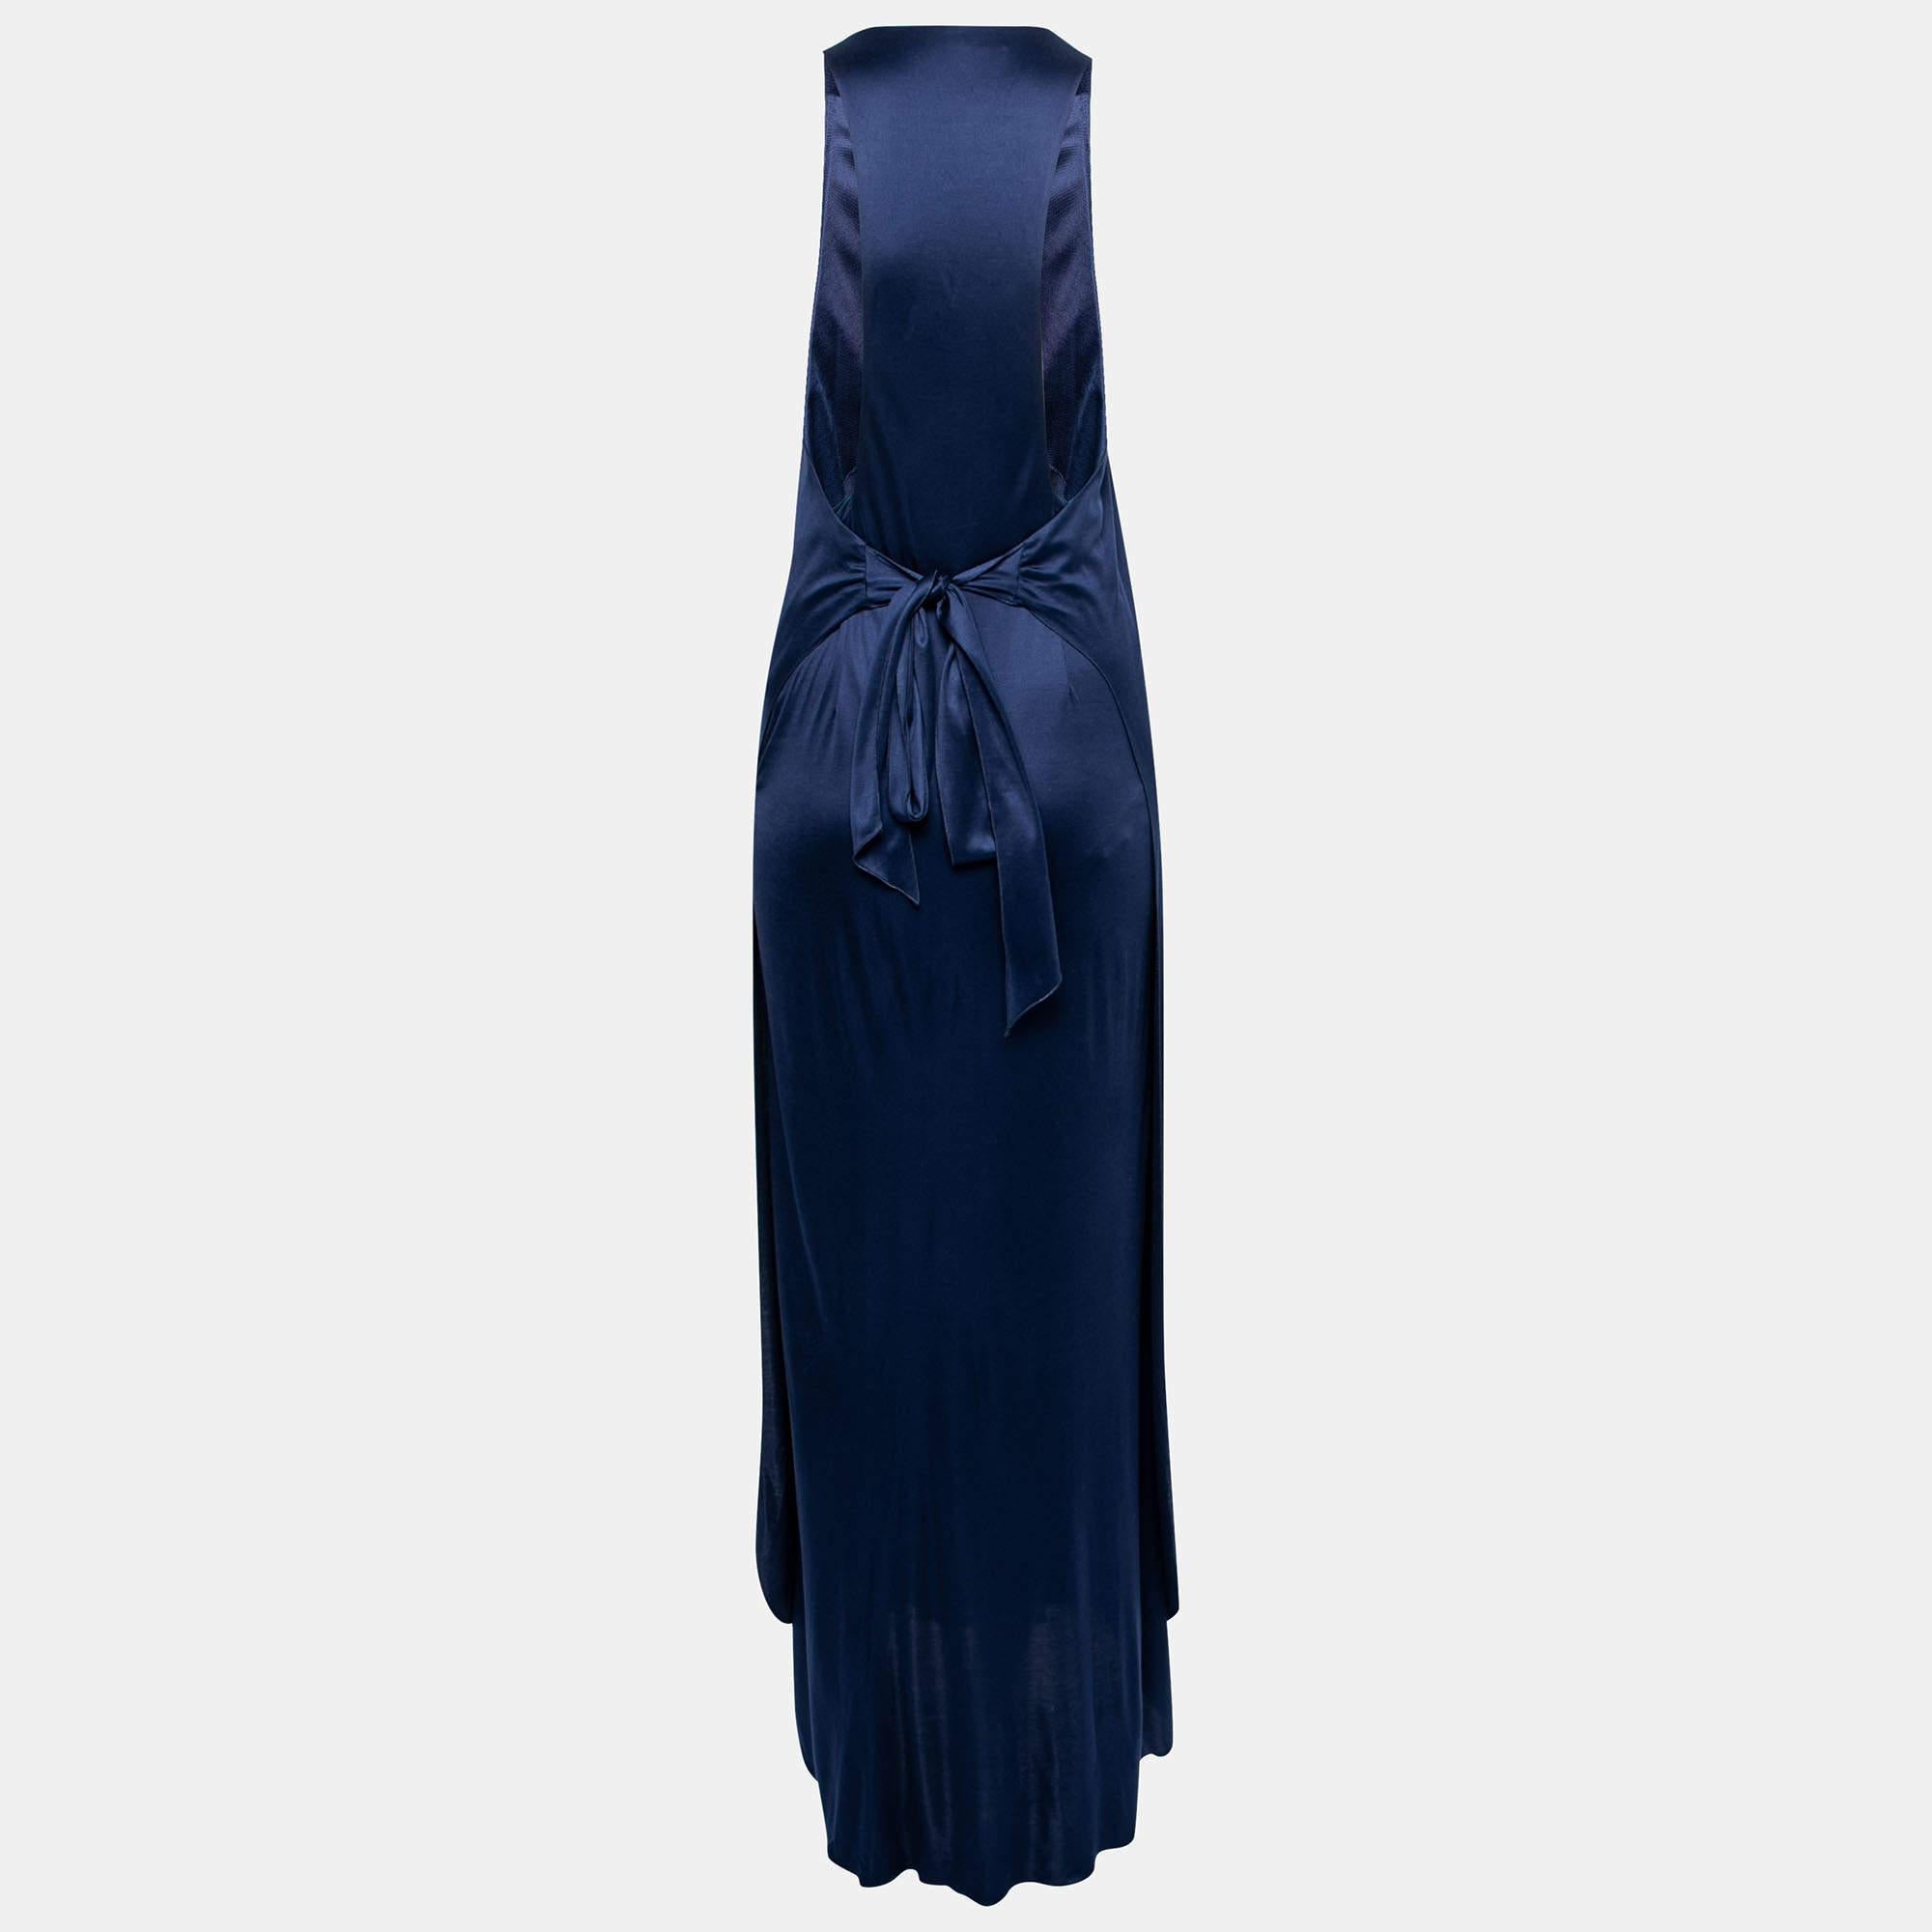 Dieses hypnotisierende Maxikleid von Yves Saint Laurent wird Ihren Stil im Handumdrehen aufwerten. Es ist aus blauer Seide geschneidert, deren Schichten seine Schönheit unterstreichen. Es umarmt eine schmeichelhaft feminine Silhouette und ist damit